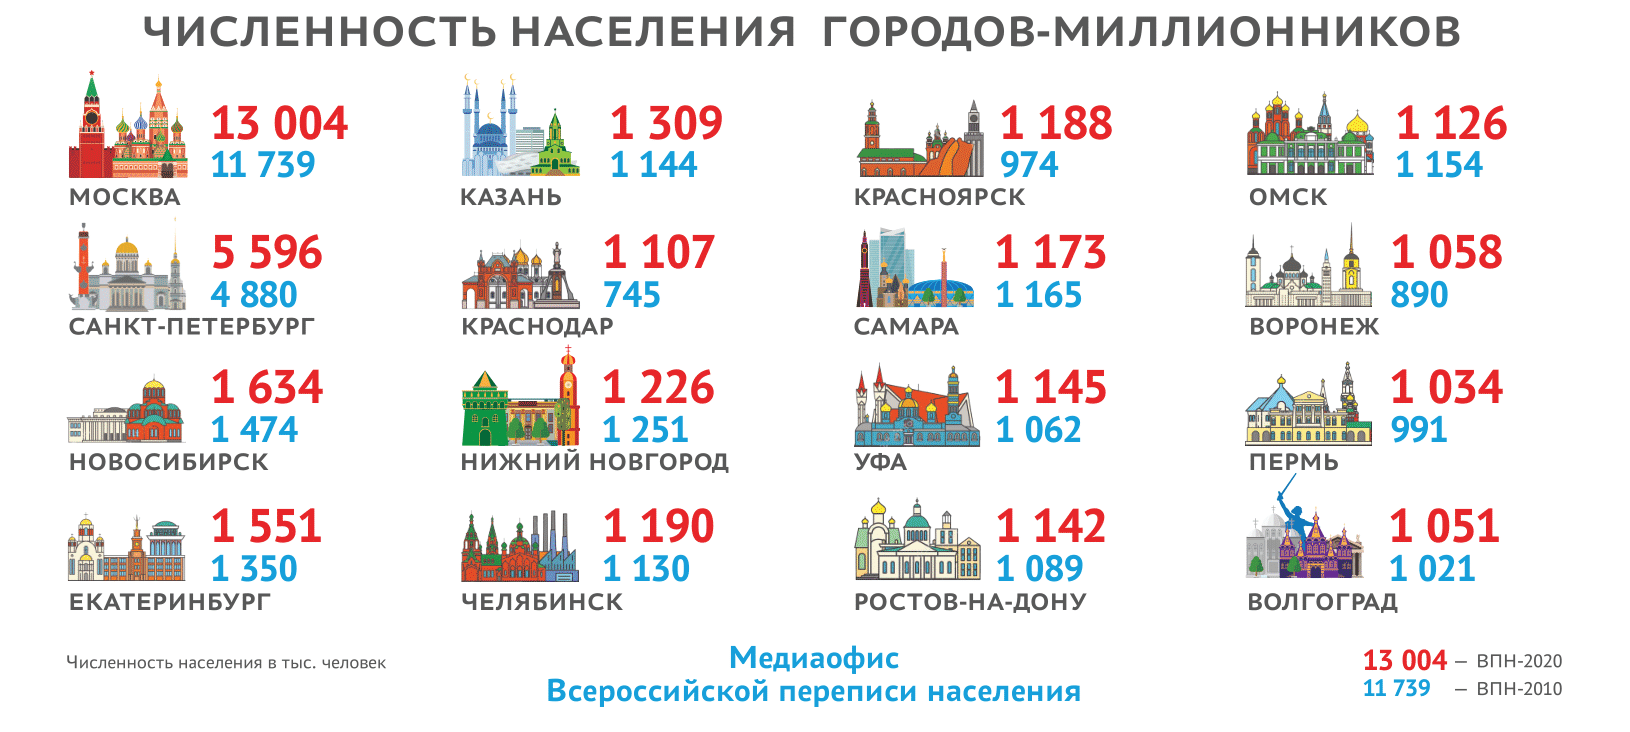 Фото: медиаофис Всероссийской переписи населения